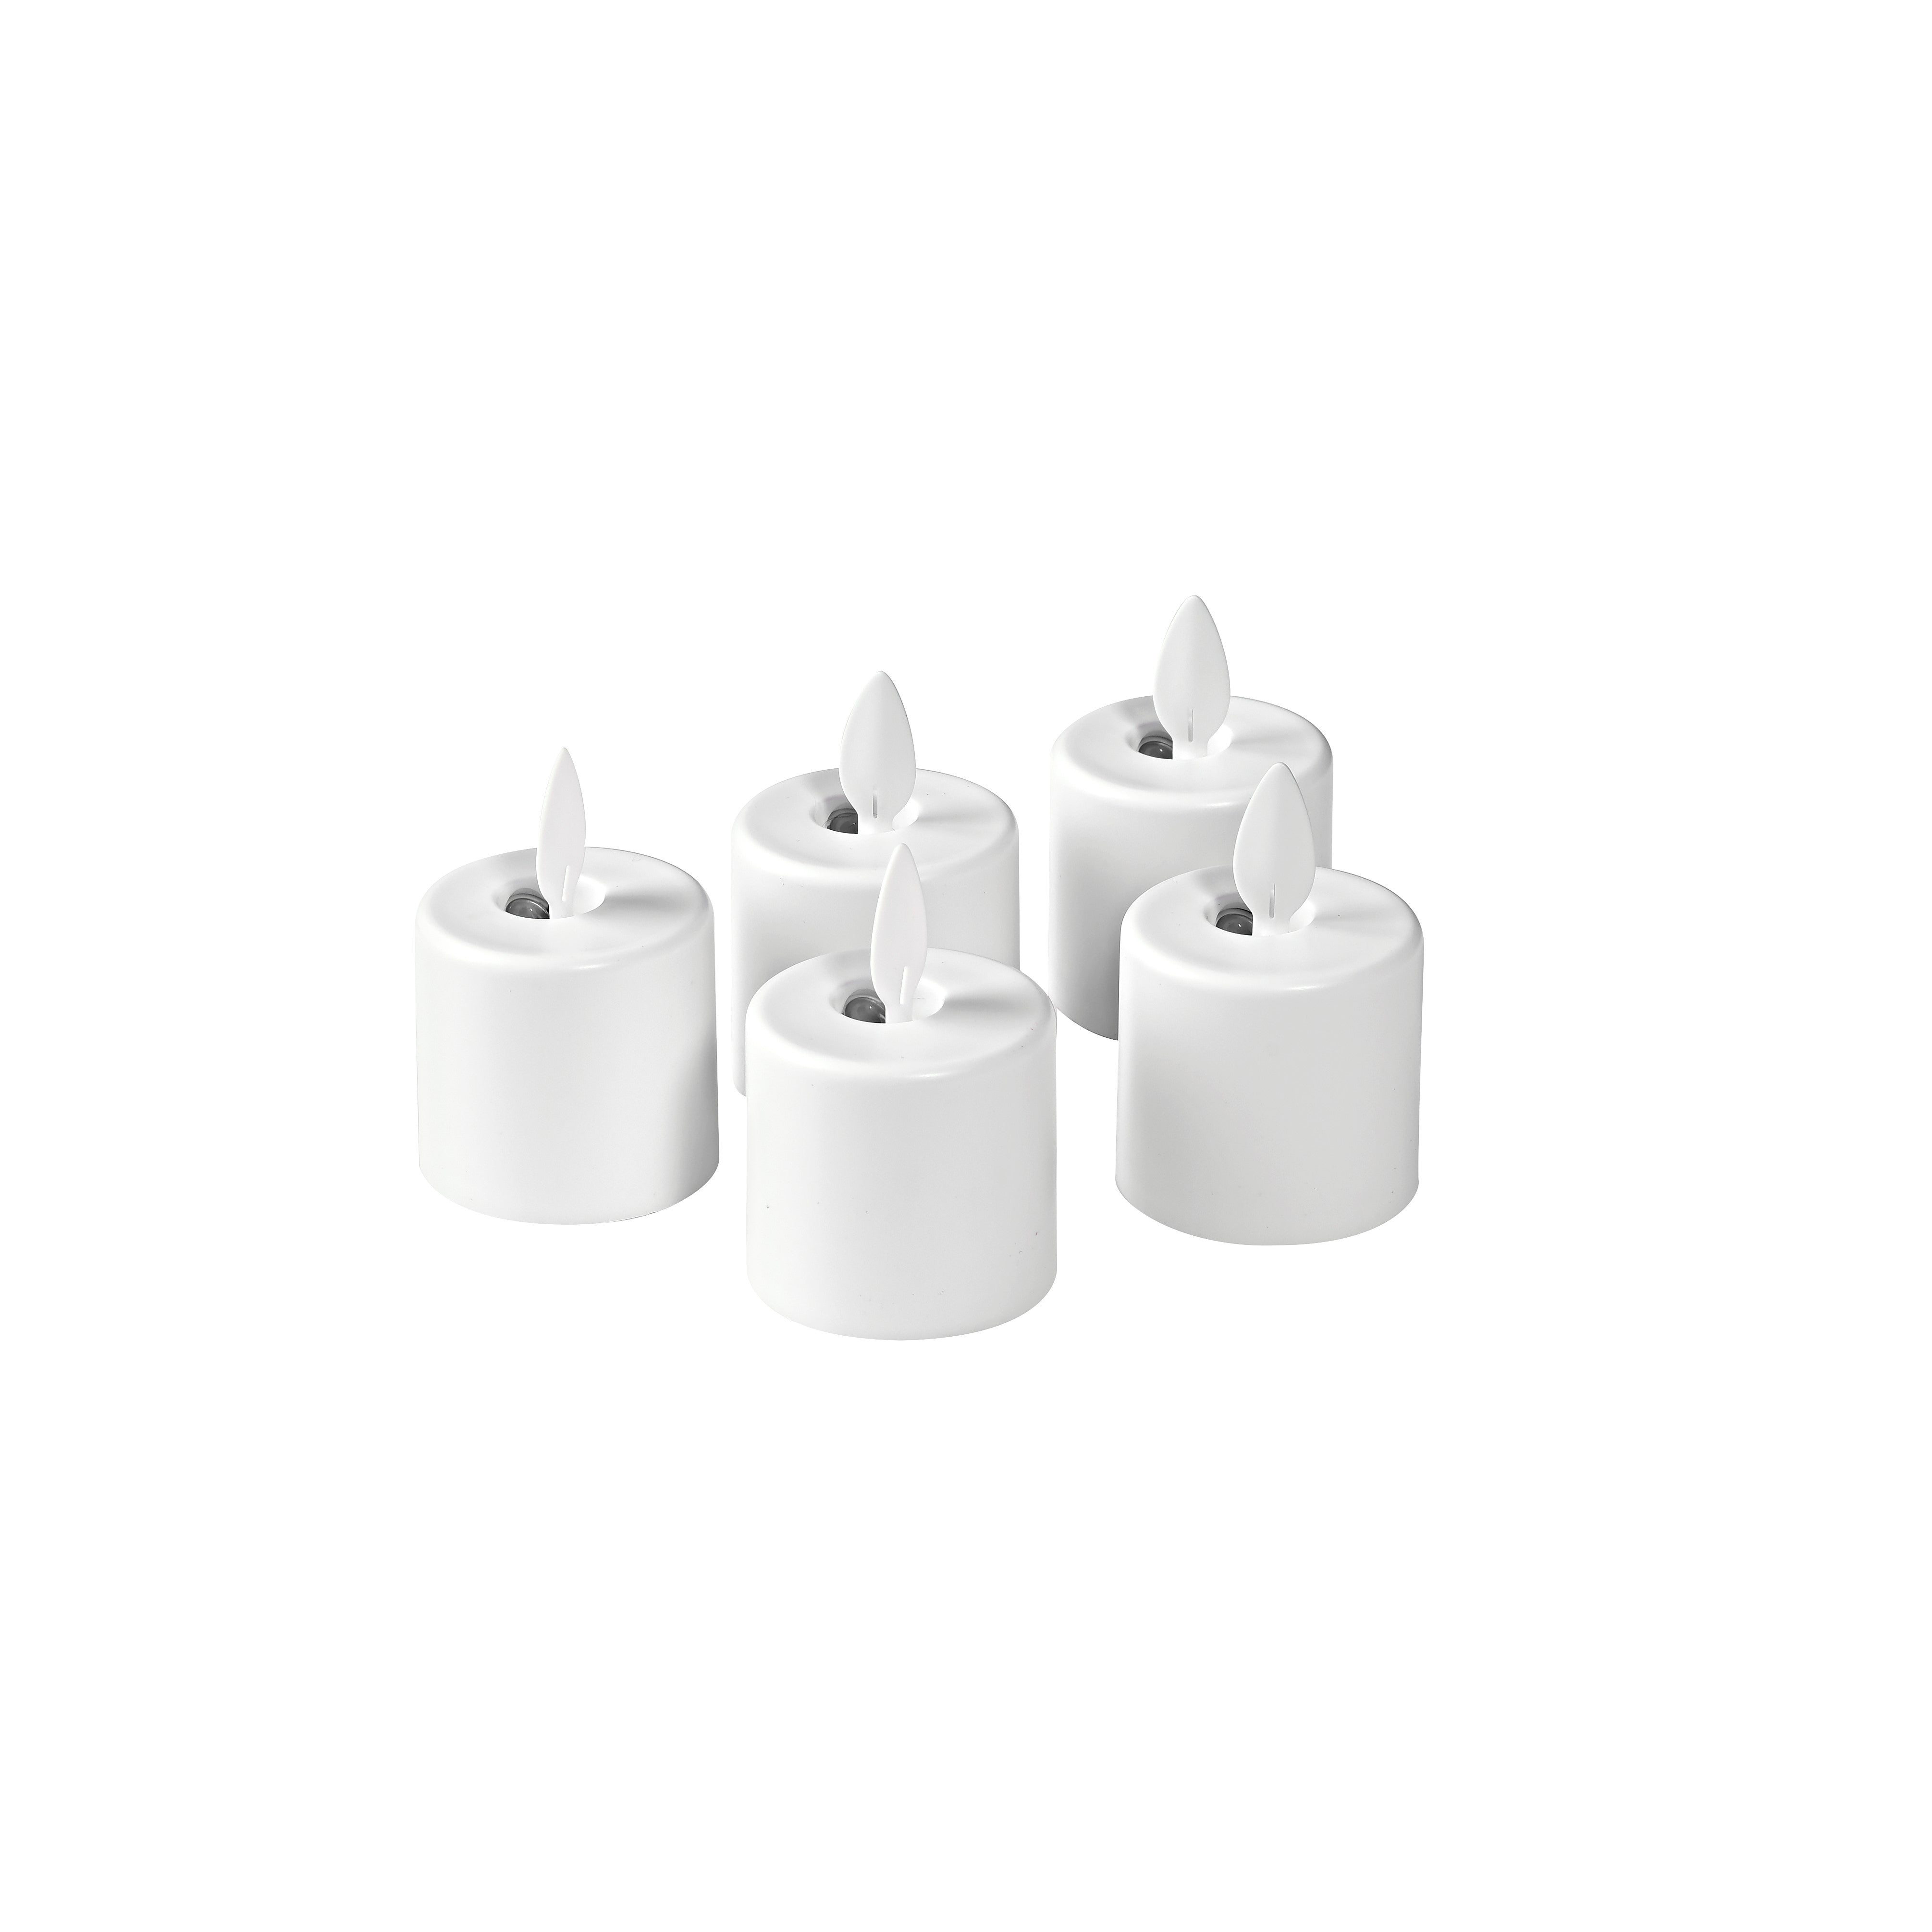 Duni LED Set Moving Flame, wiederaufladbar, Warm White, 5 Stück, Ersatzteil 38 x Ø 36 mm 25 Std. Weiß, 1 Stk/Krt (1 x 1 Stk)